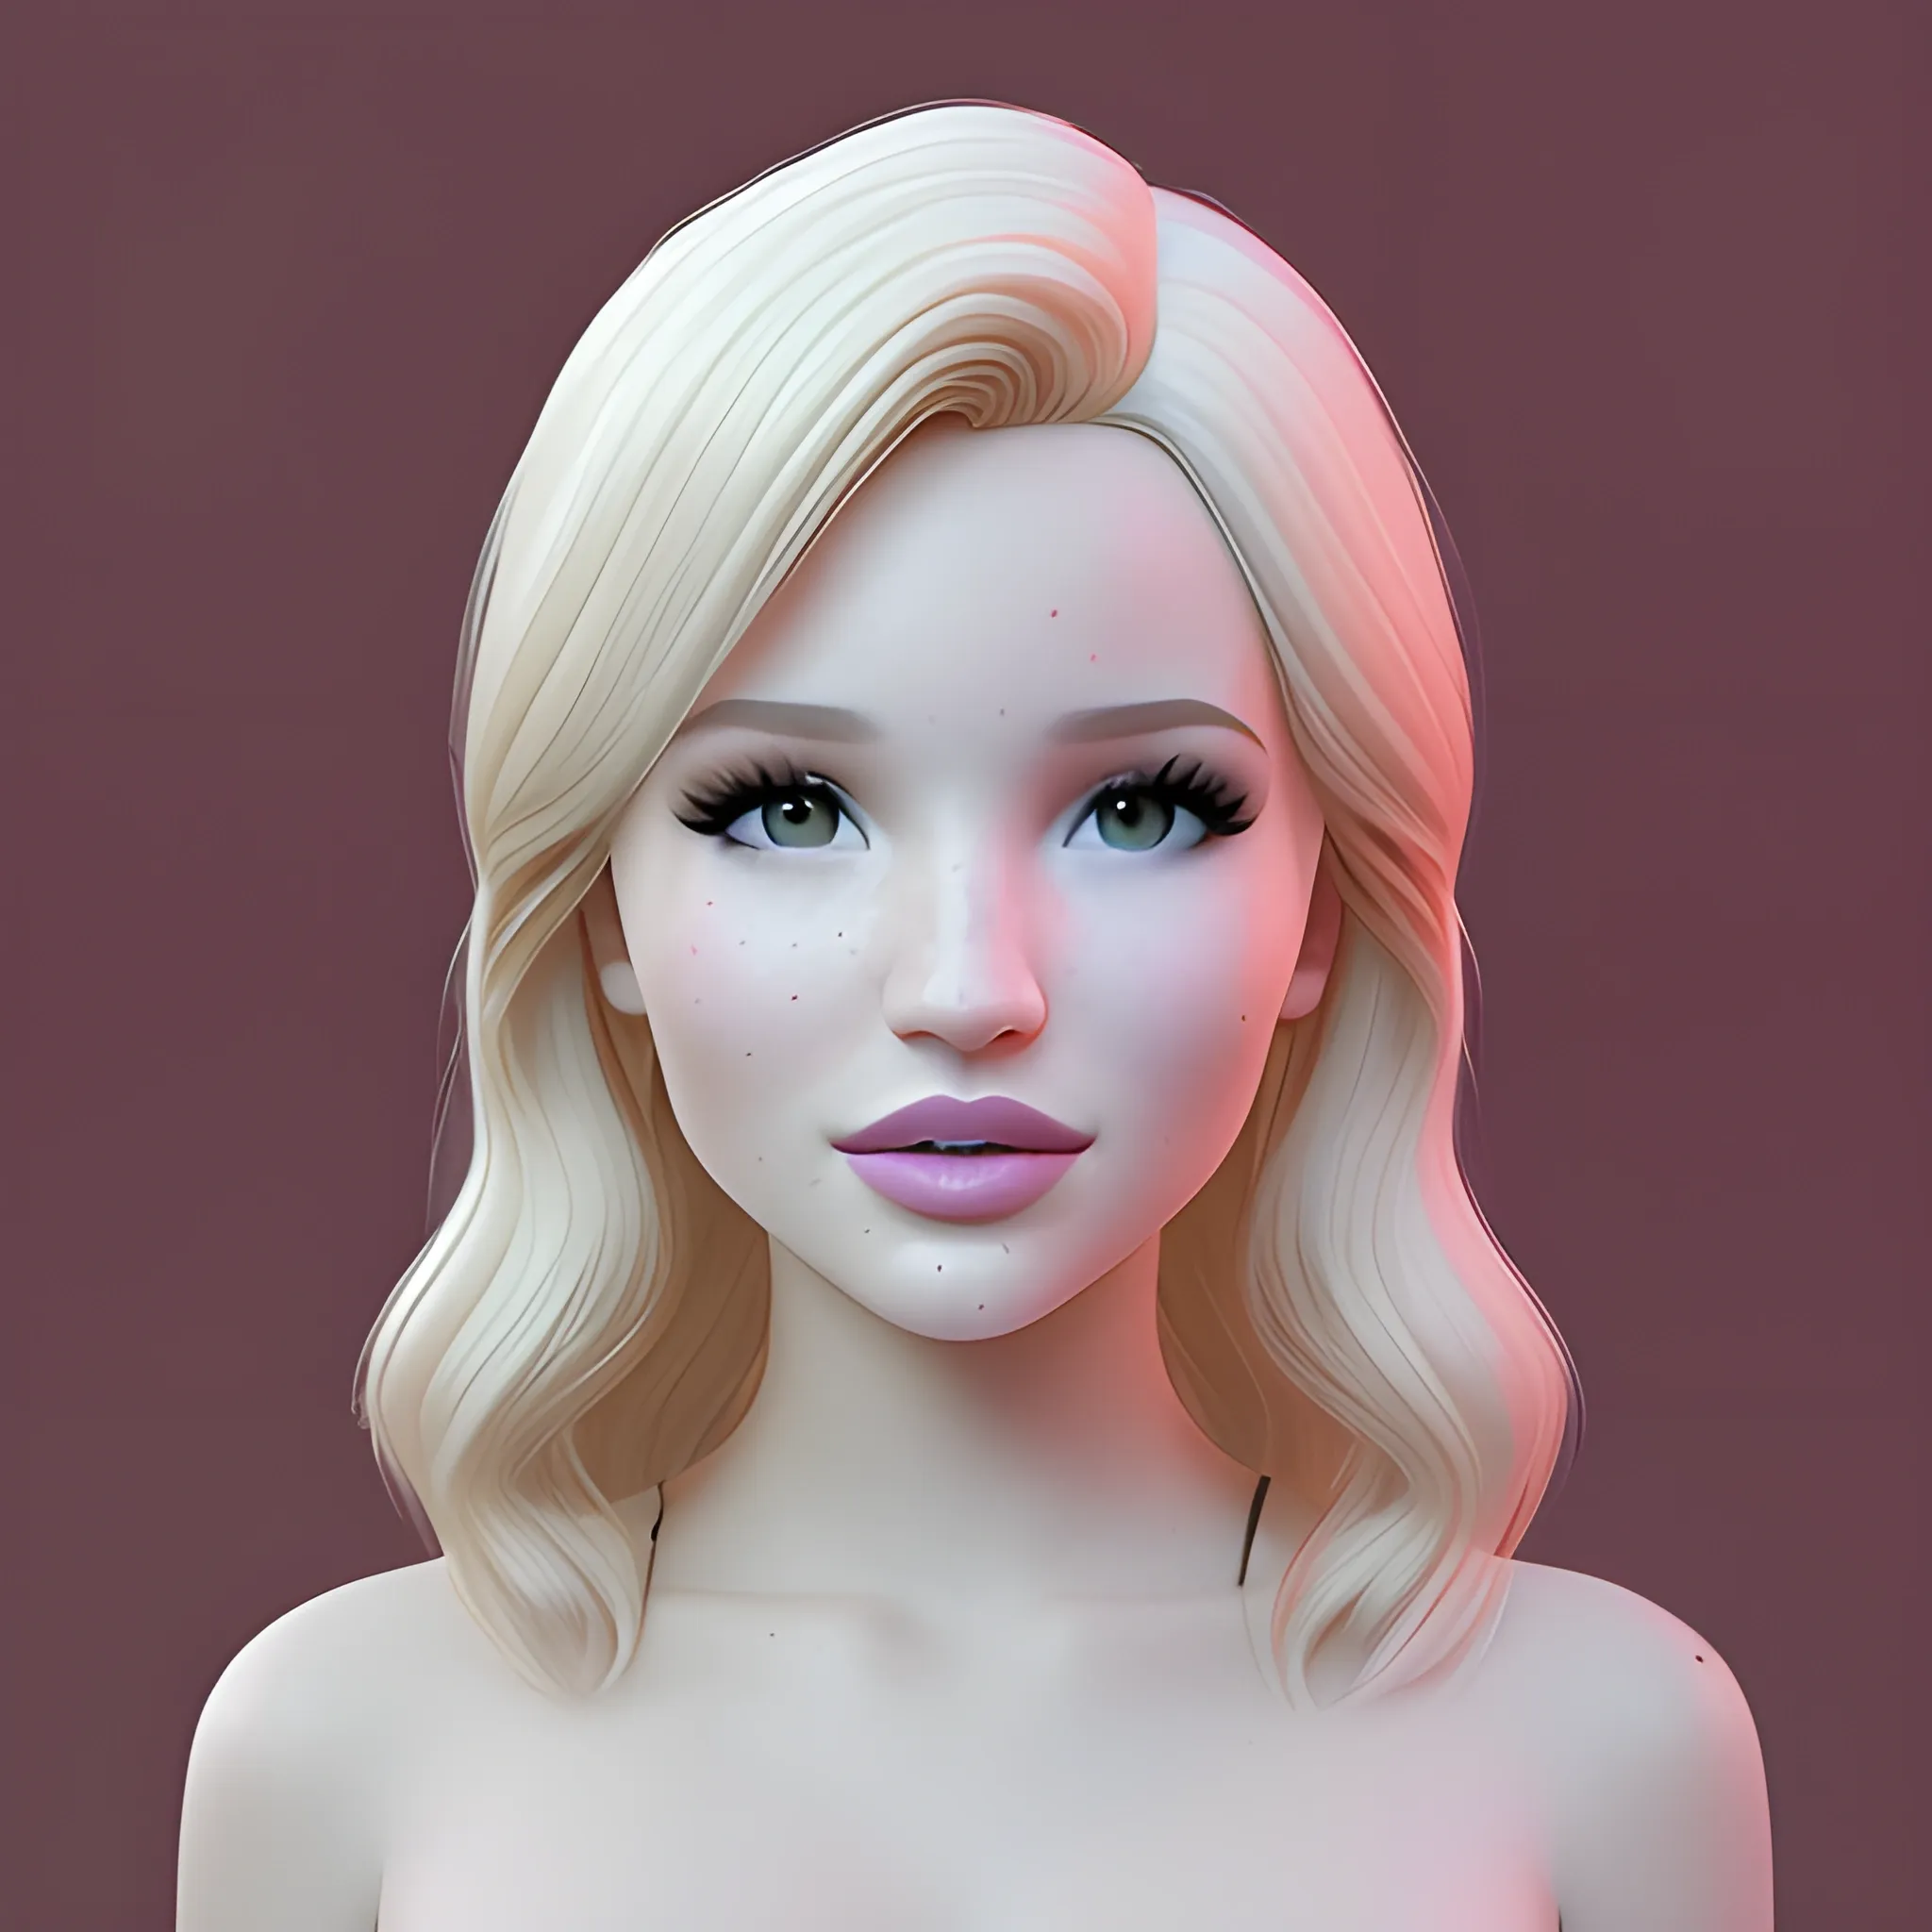 Bella Thorne / Dove Cameron face morph, 3D